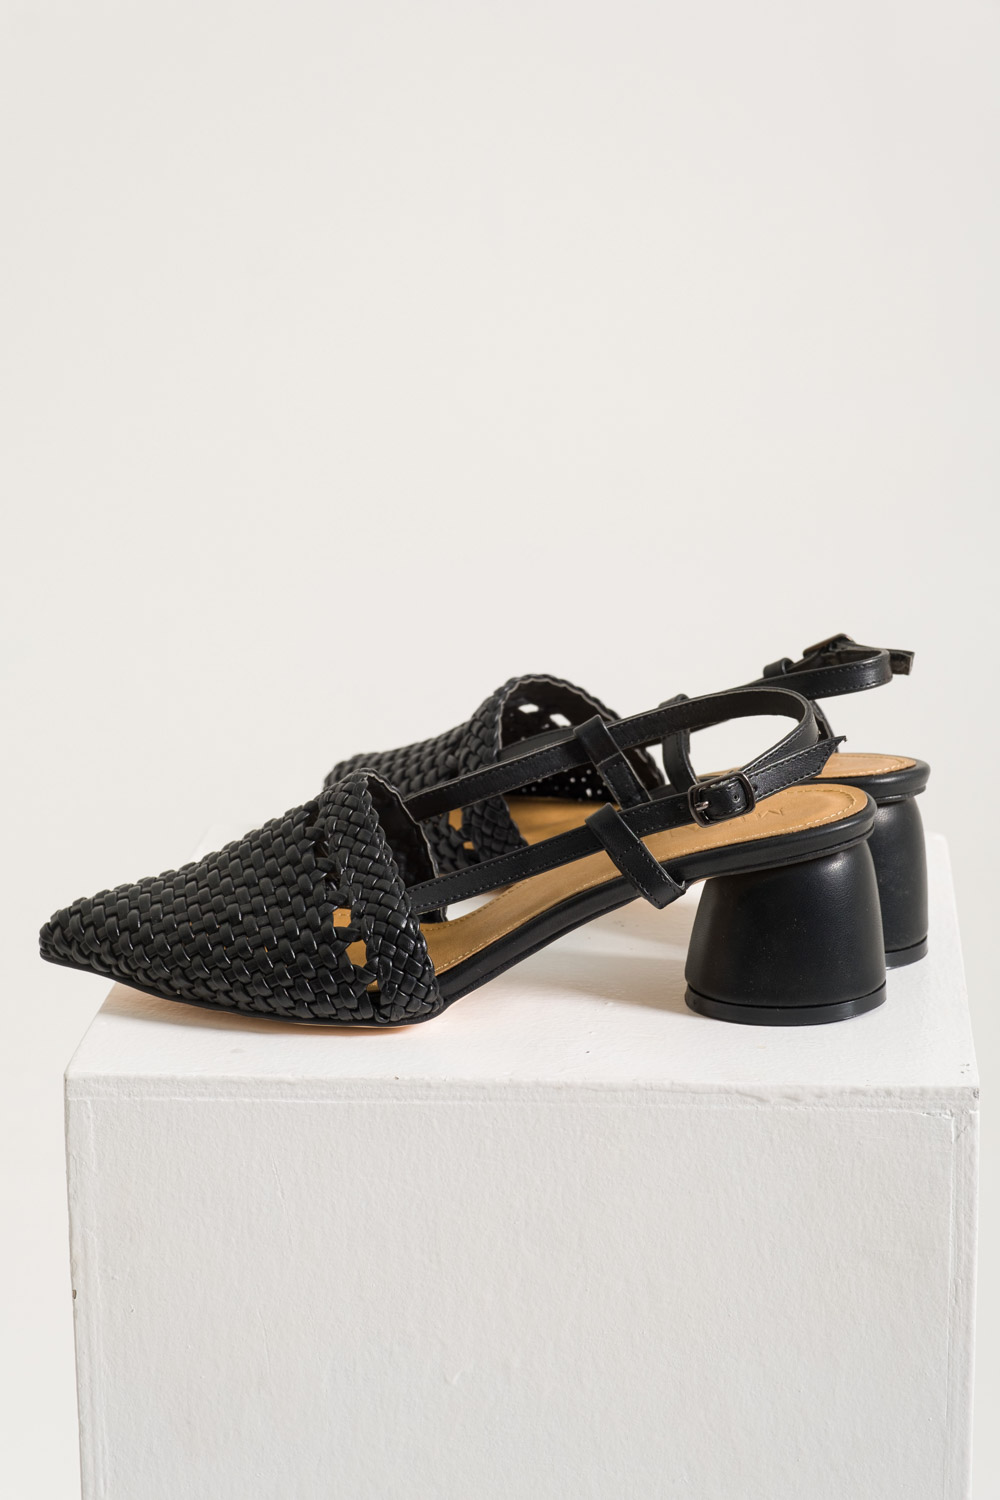 Hasır Görünümlü Topuklu Ayakkabı (Siyah)